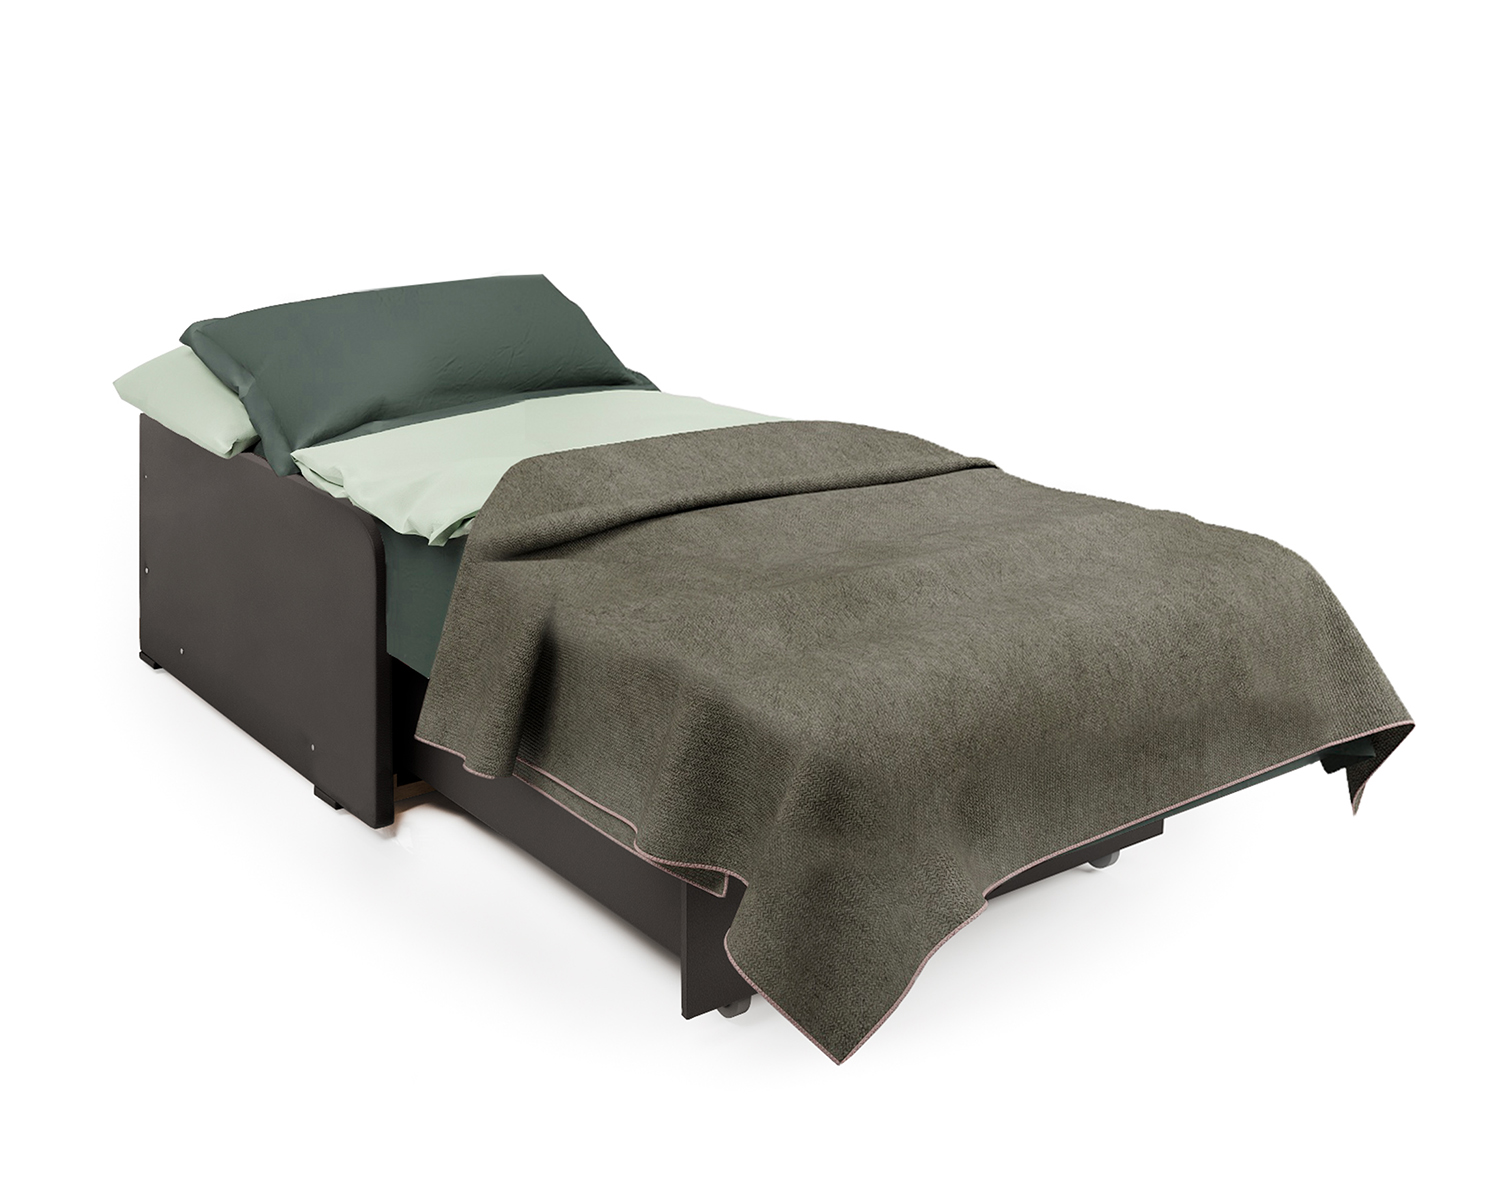 Кресло-кровать Шарм-Дизайн Коломбо БП 33070715, рогожка шоколад и экокожа шоколад/бук